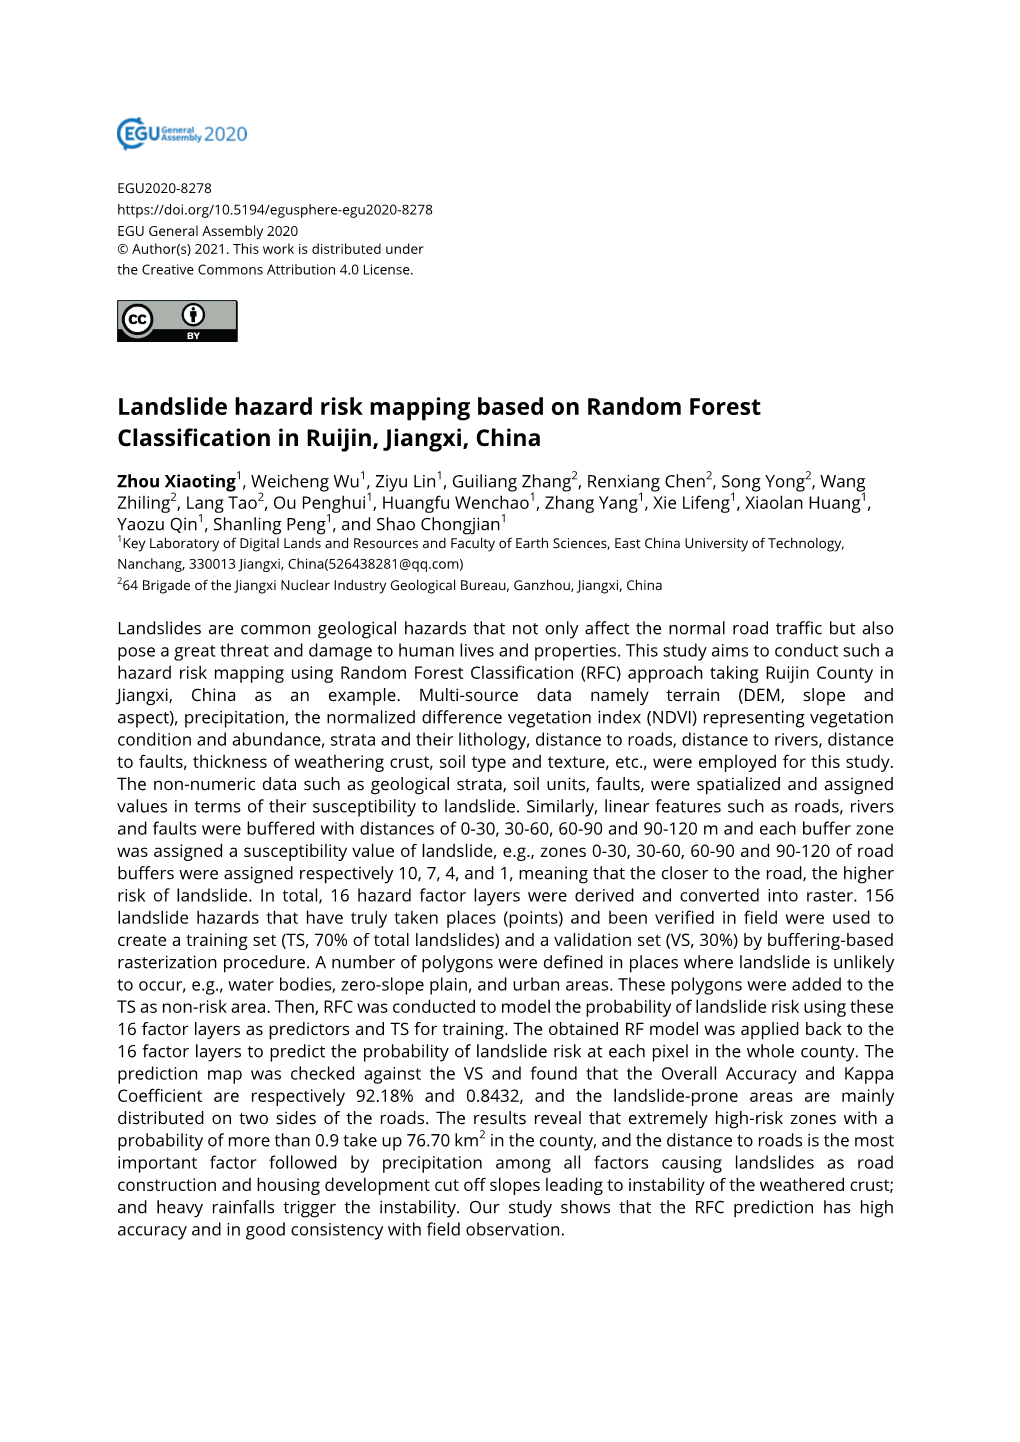 Landslide Hazard Risk Mapping Based on Random Forest Classification in Ruijin, Jiangxi, China